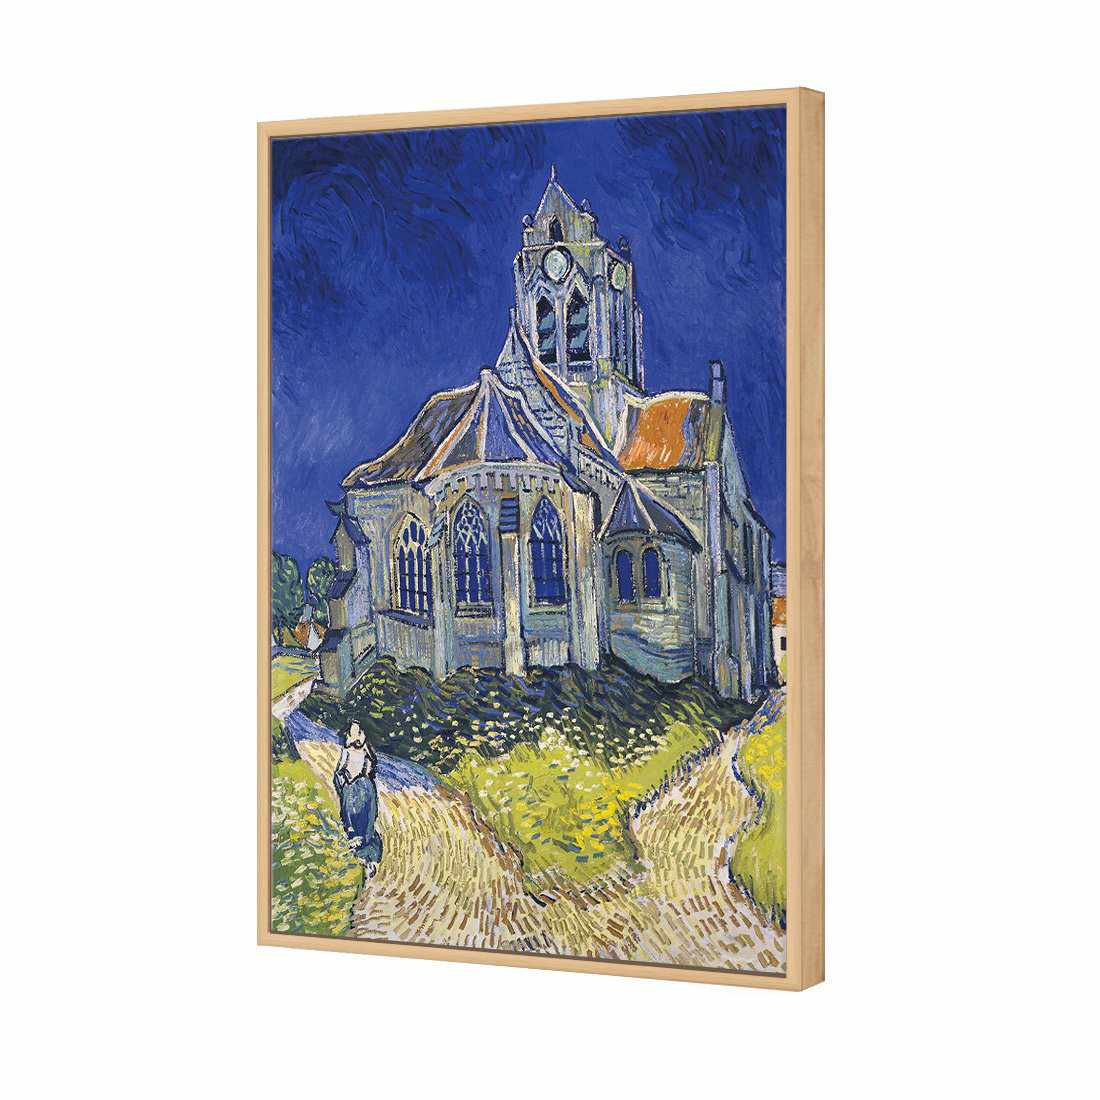 The Church At Auvers - Van Gogh Canvas Art-Canvas-Wall Art Designs-45x30cm-Canvas - Oak Frame-Wall Art Designs